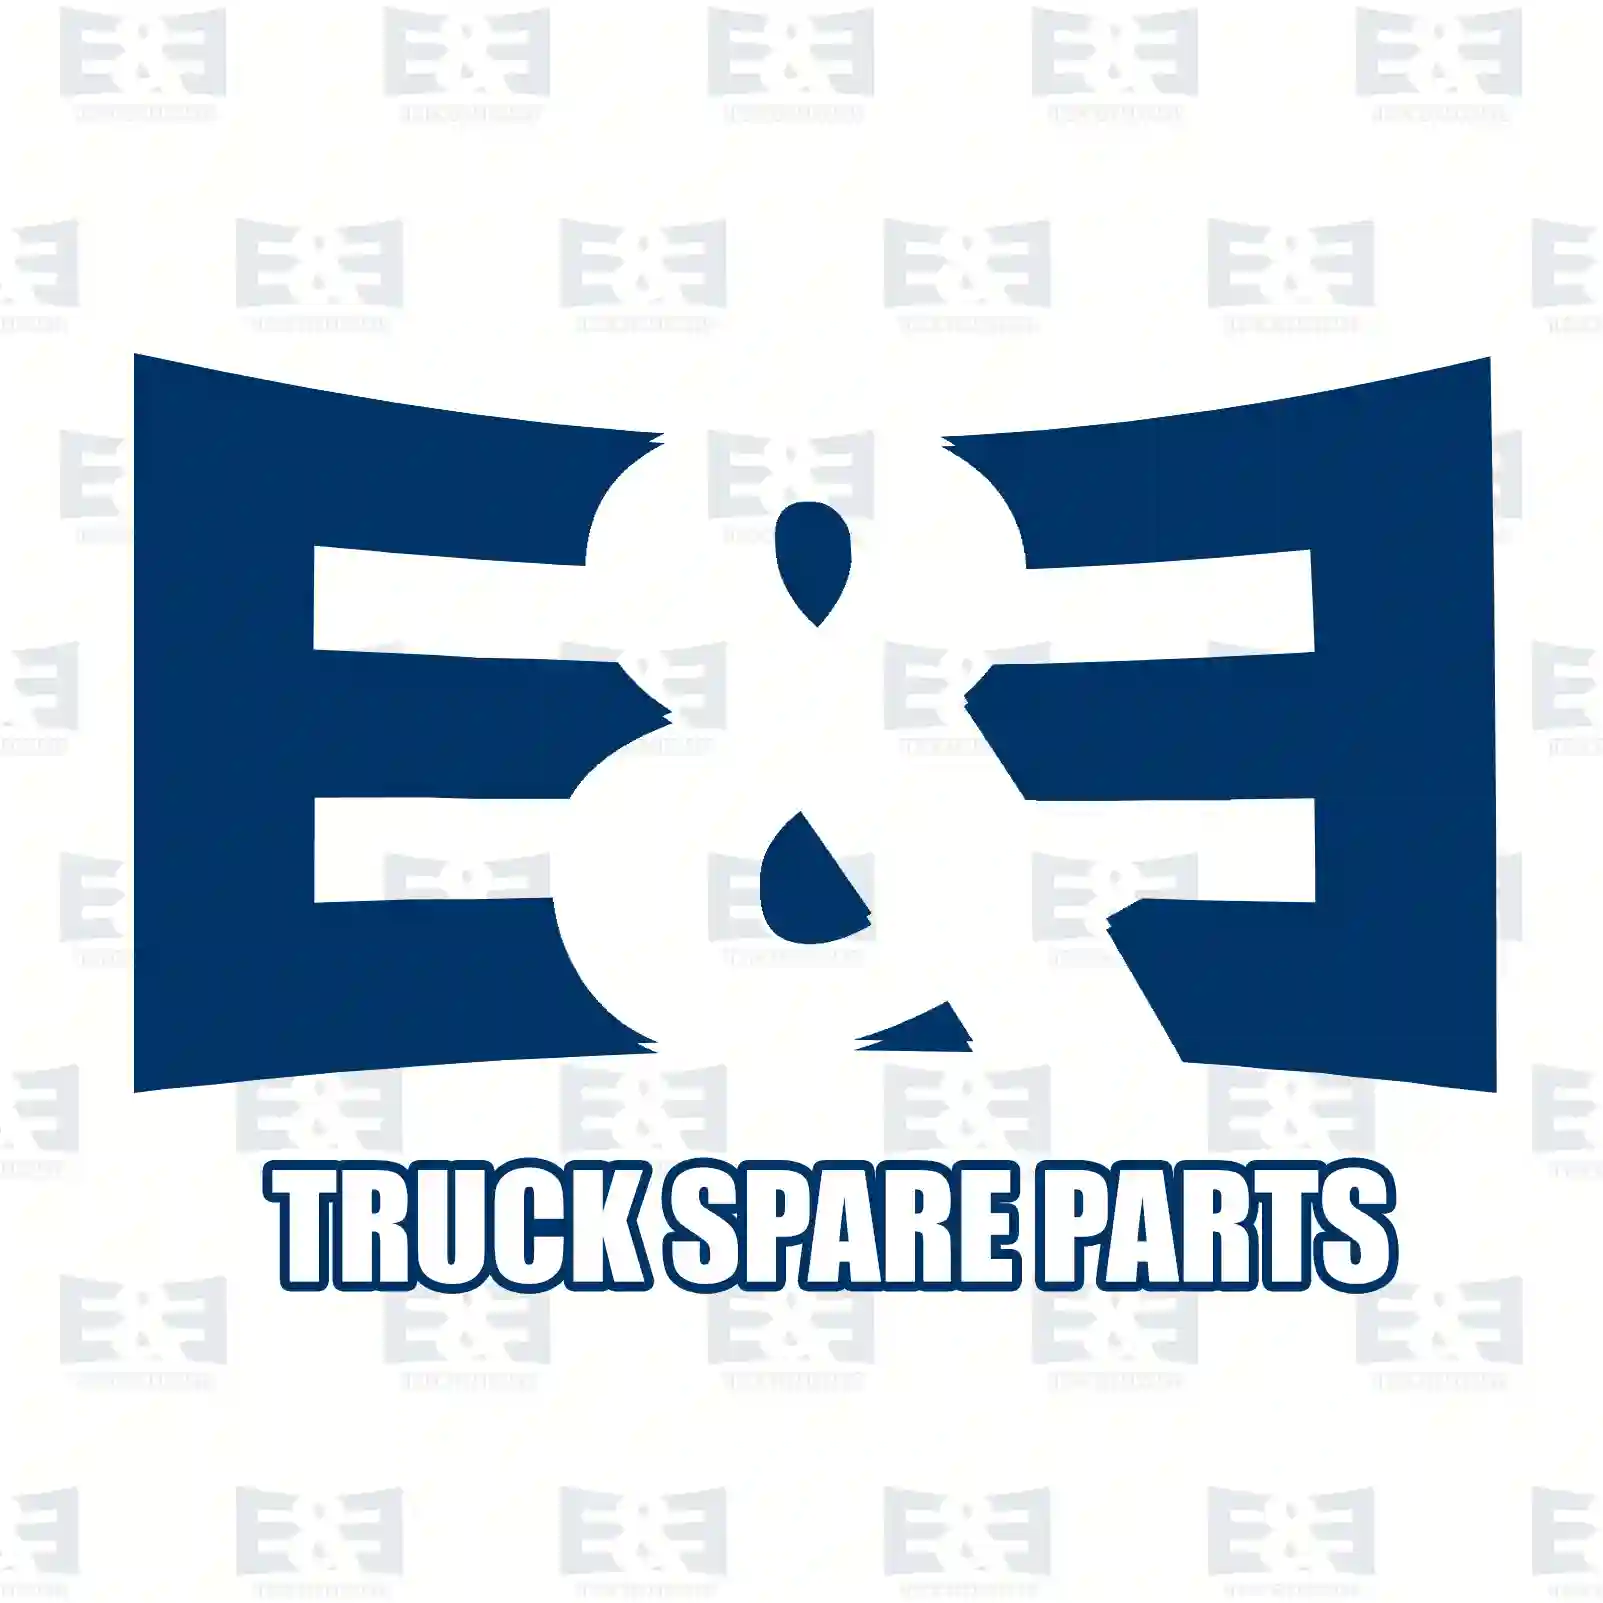 Brake disc, 2E2294851, 81508030043, 81508030062, , , , , , , , ||  2E2294851 E&E Truck Spare Parts | Truck Spare Parts, Auotomotive Spare Parts Brake disc, 2E2294851, 81508030043, 81508030062, , , , , , , , ||  2E2294851 E&E Truck Spare Parts | Truck Spare Parts, Auotomotive Spare Parts